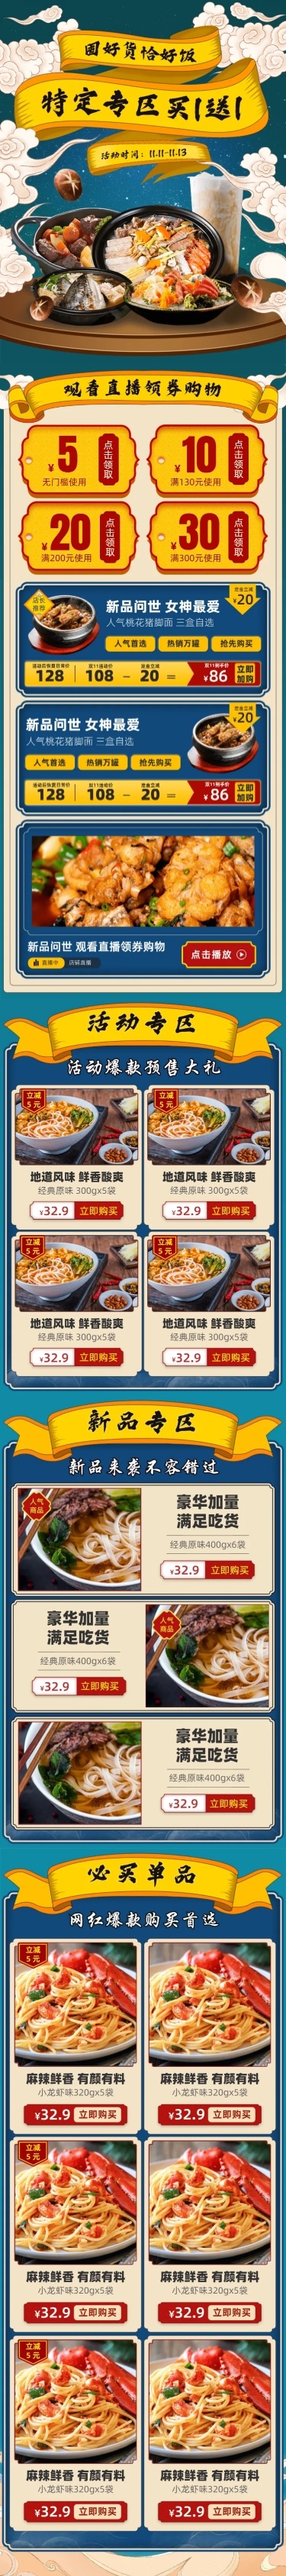 双11国潮中国风食品店铺首页